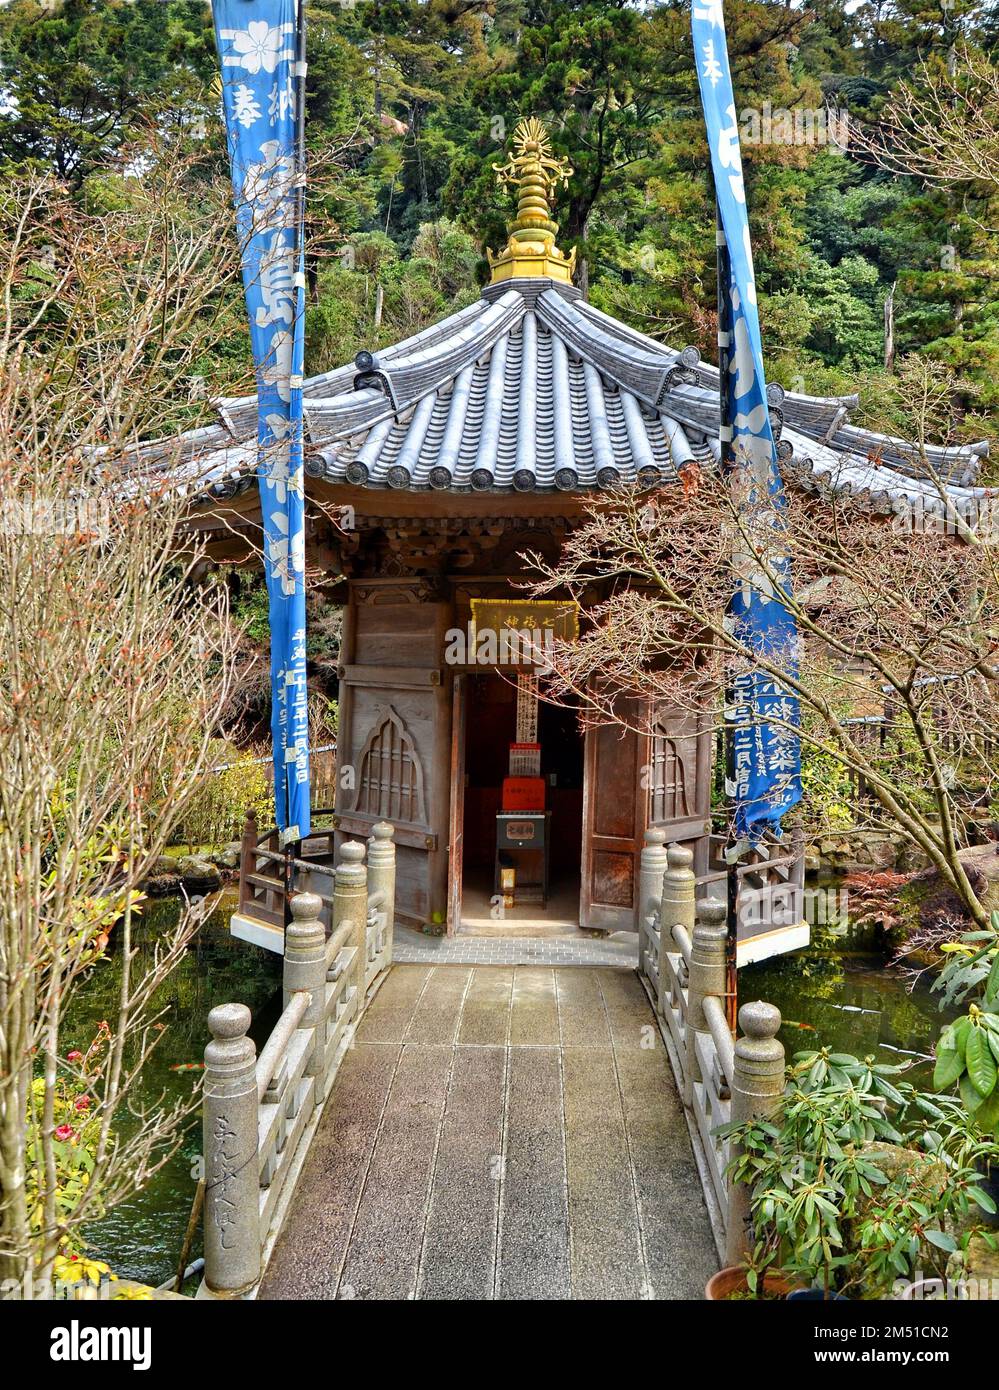 Daishō-in o Daisyō-in è uno storico complesso di templi giapponesi con molti santuari e statue sul Monte Misen, isola di Itsukushima, Giappone. Foto Stock